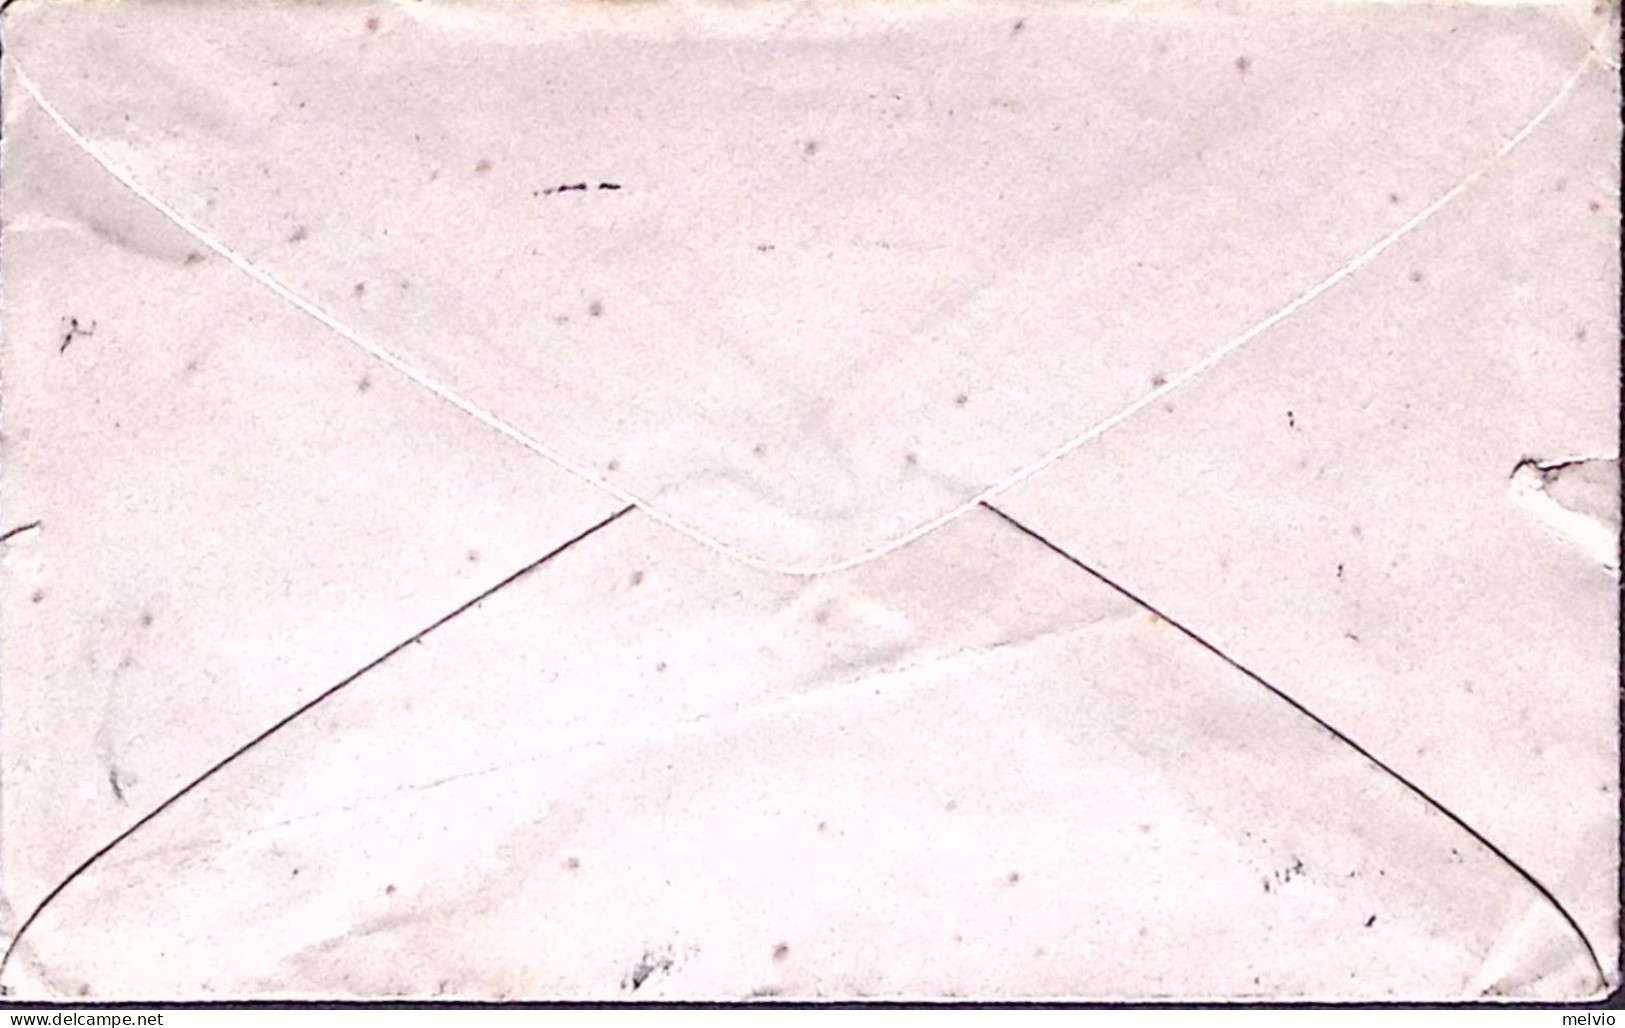 1892-STEMMI C.5 Isolato Su Biglietto Strade Ferrate Del Mediterraneo Ann.Venezia - Poststempel